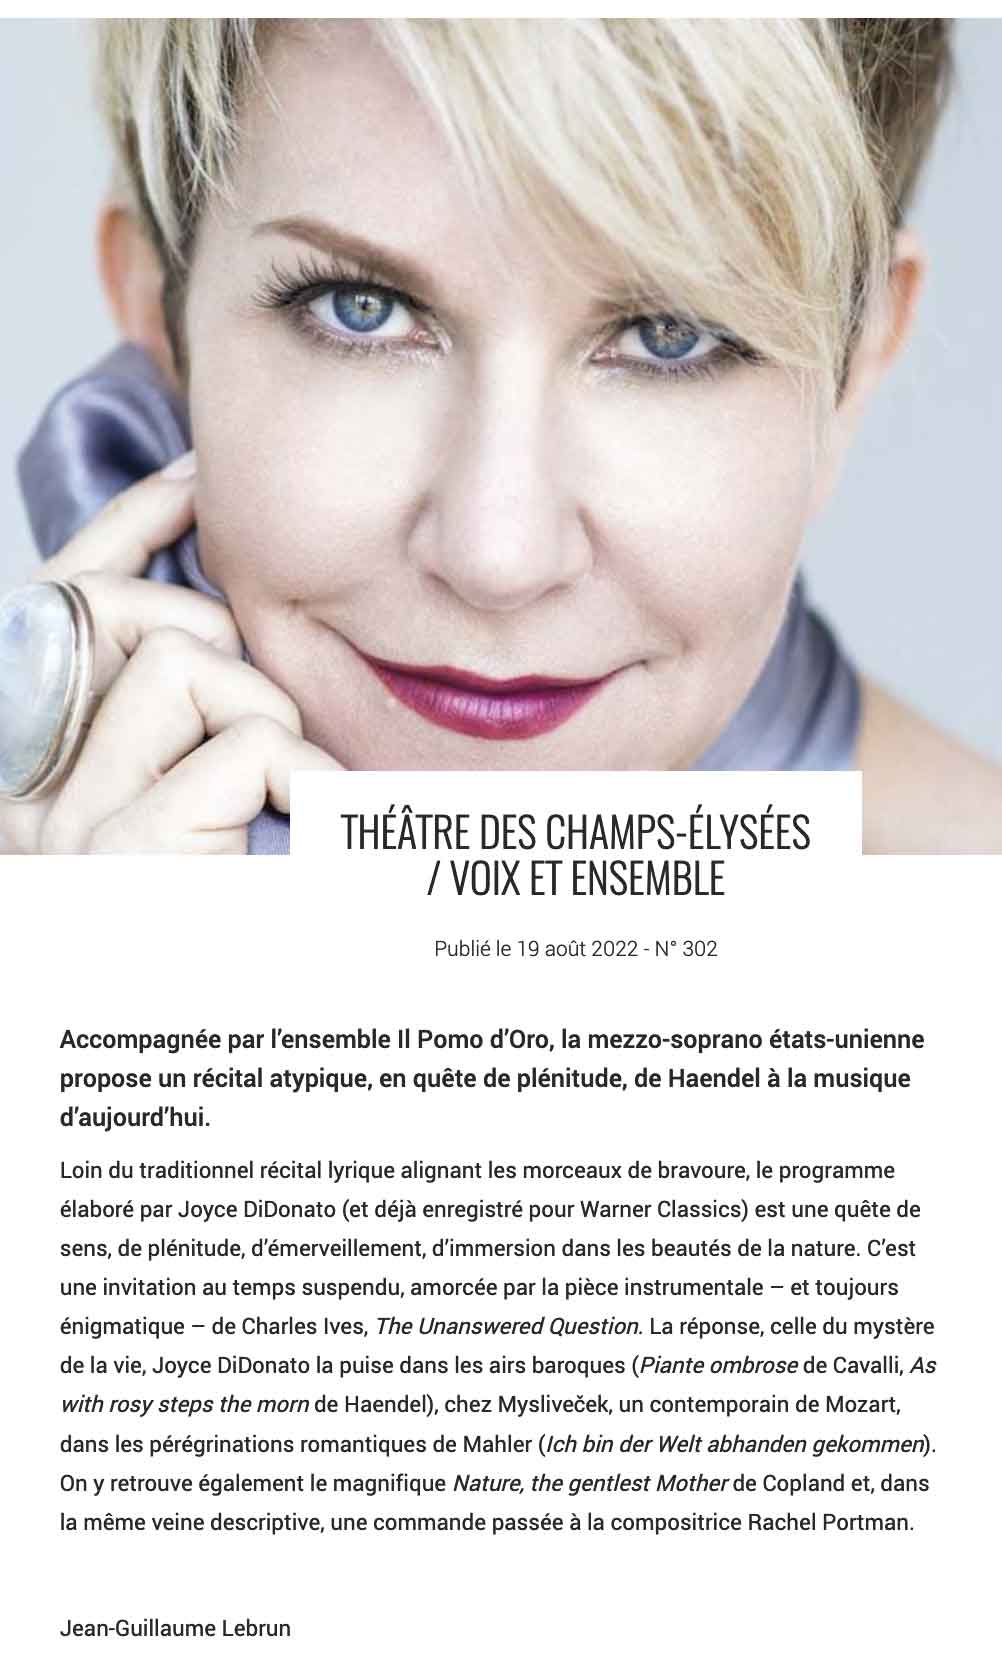 Annonce du concert de Joyce DiDonato le 5 octobre 2022 au Théâtre des Champs-Elysées dans le n° de septembre 2022 de La Terrasse